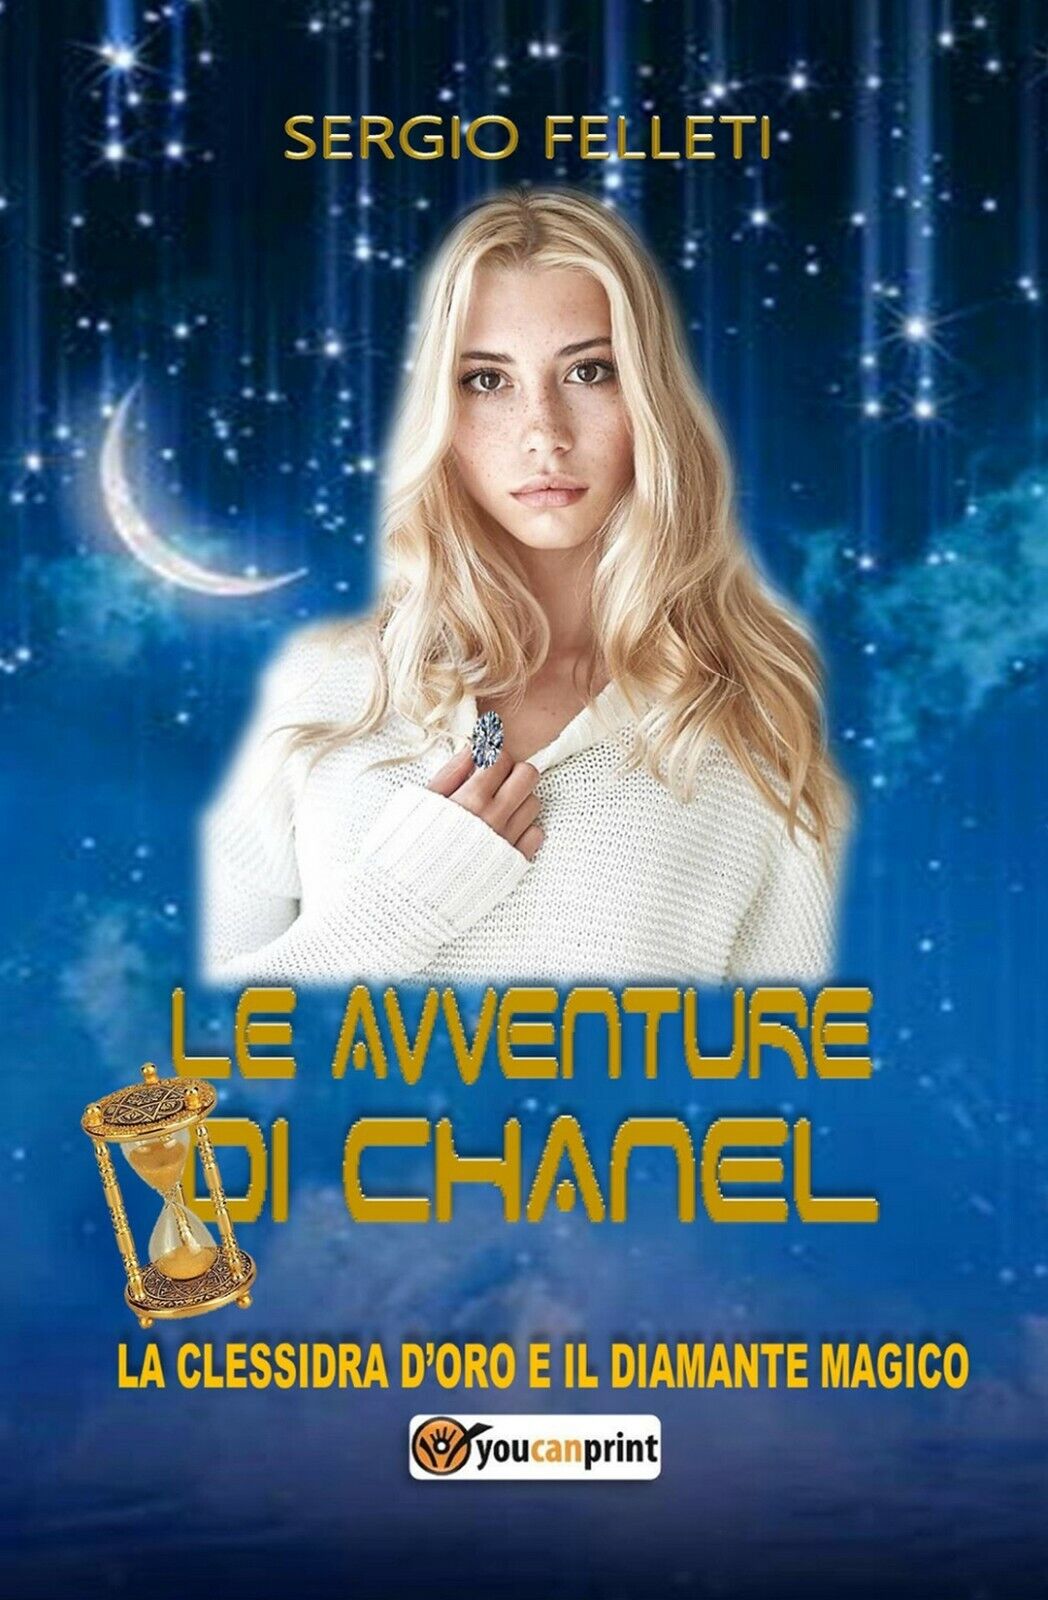 Le avventure di Chanel. La clessidra d'oro e il diamante magico